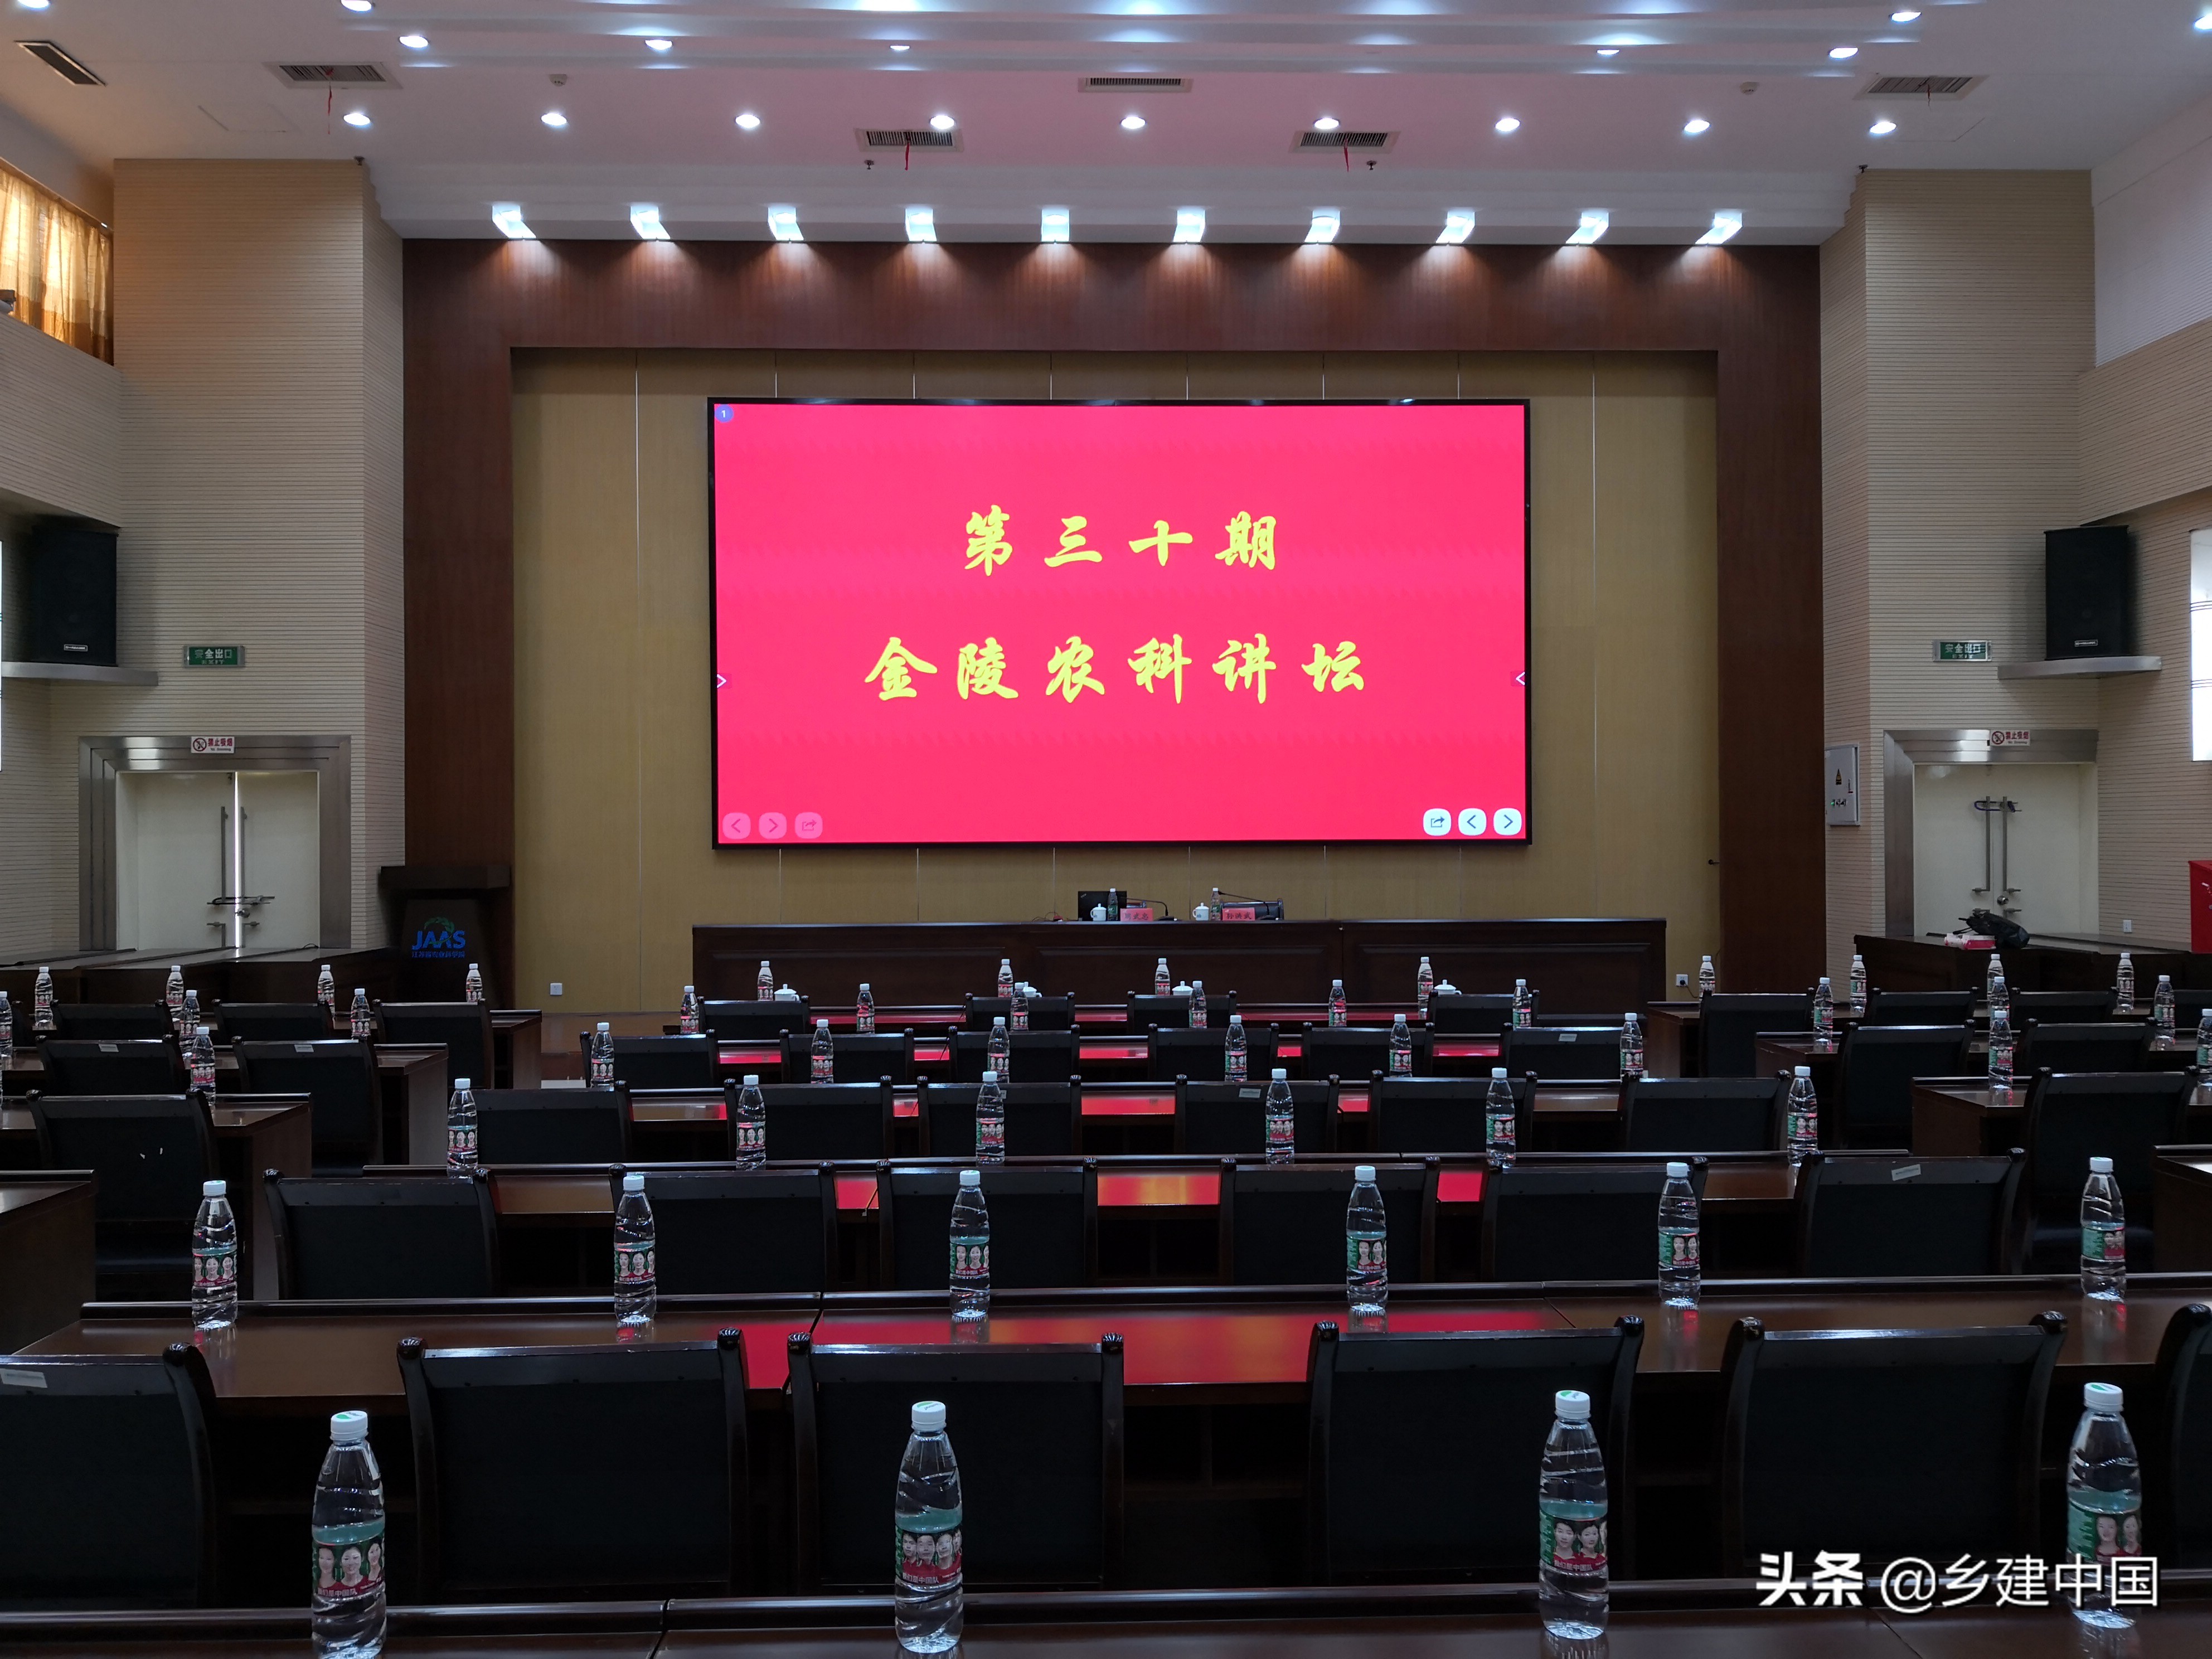 上海交通大学设计学院周武忠教授做客第三十期金陵农科讲坛